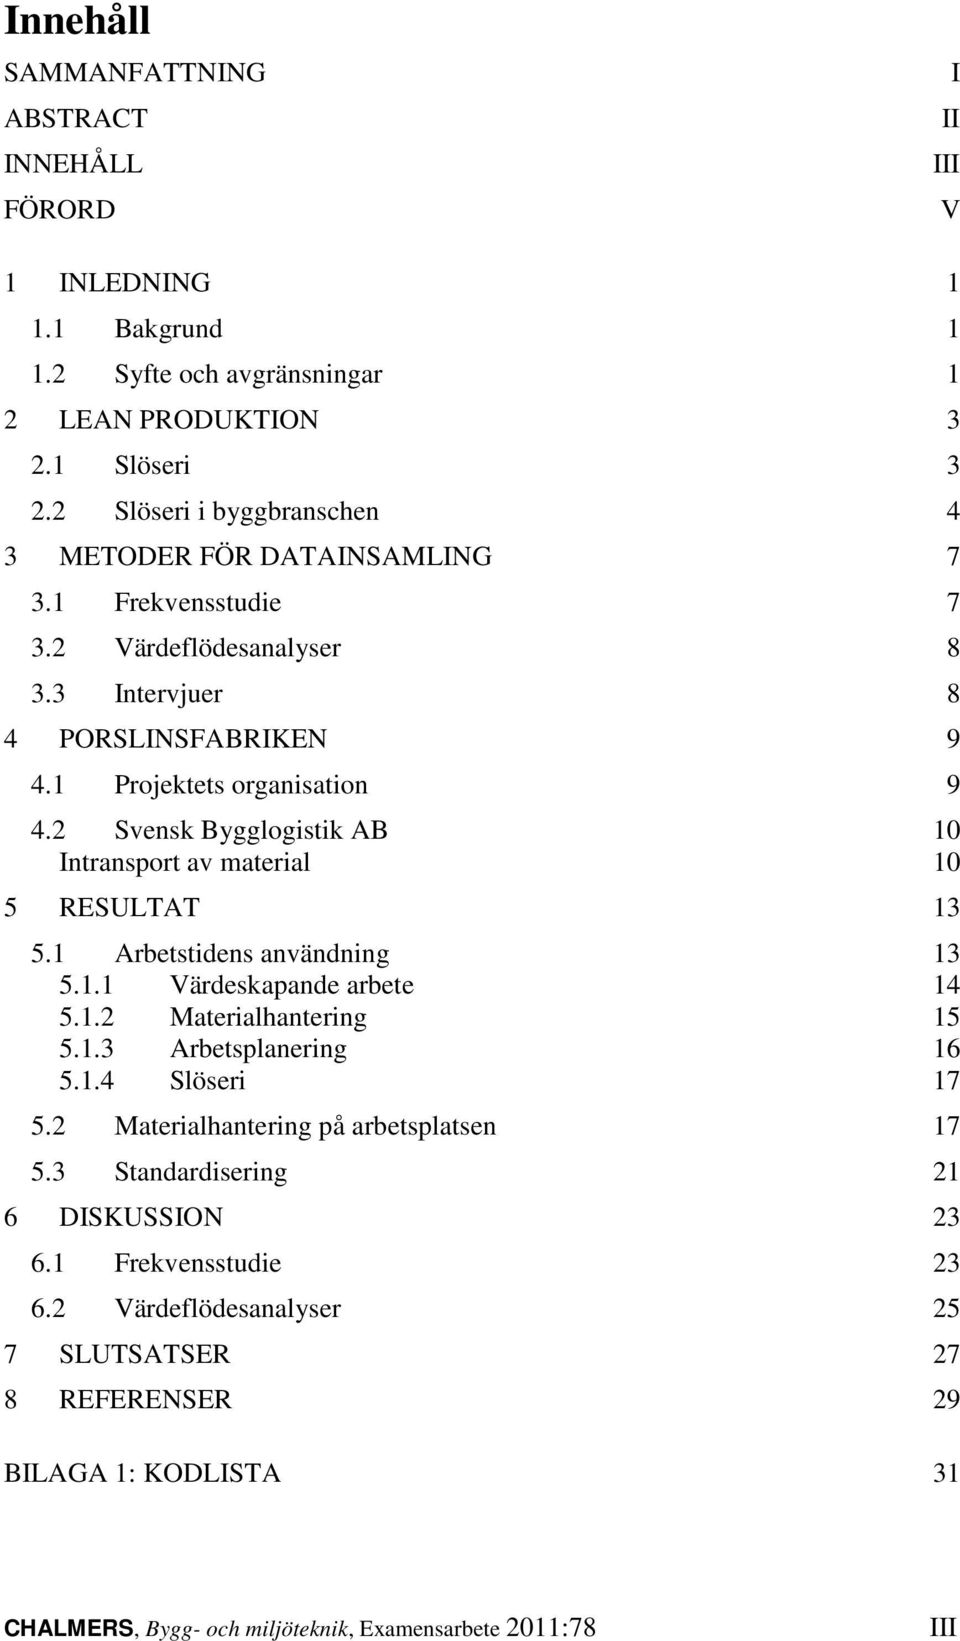 2 Svensk Bygglogistik AB 10 Intransport av material 10 5 RESULTAT 13 5.1 Arbetstidens användning 13 5.1.1 Värdeskapande arbete 14 5.1.2 Materialhantering 15 5.1.3 Arbetsplanering 16 5.1.4 Slöseri 17 5.